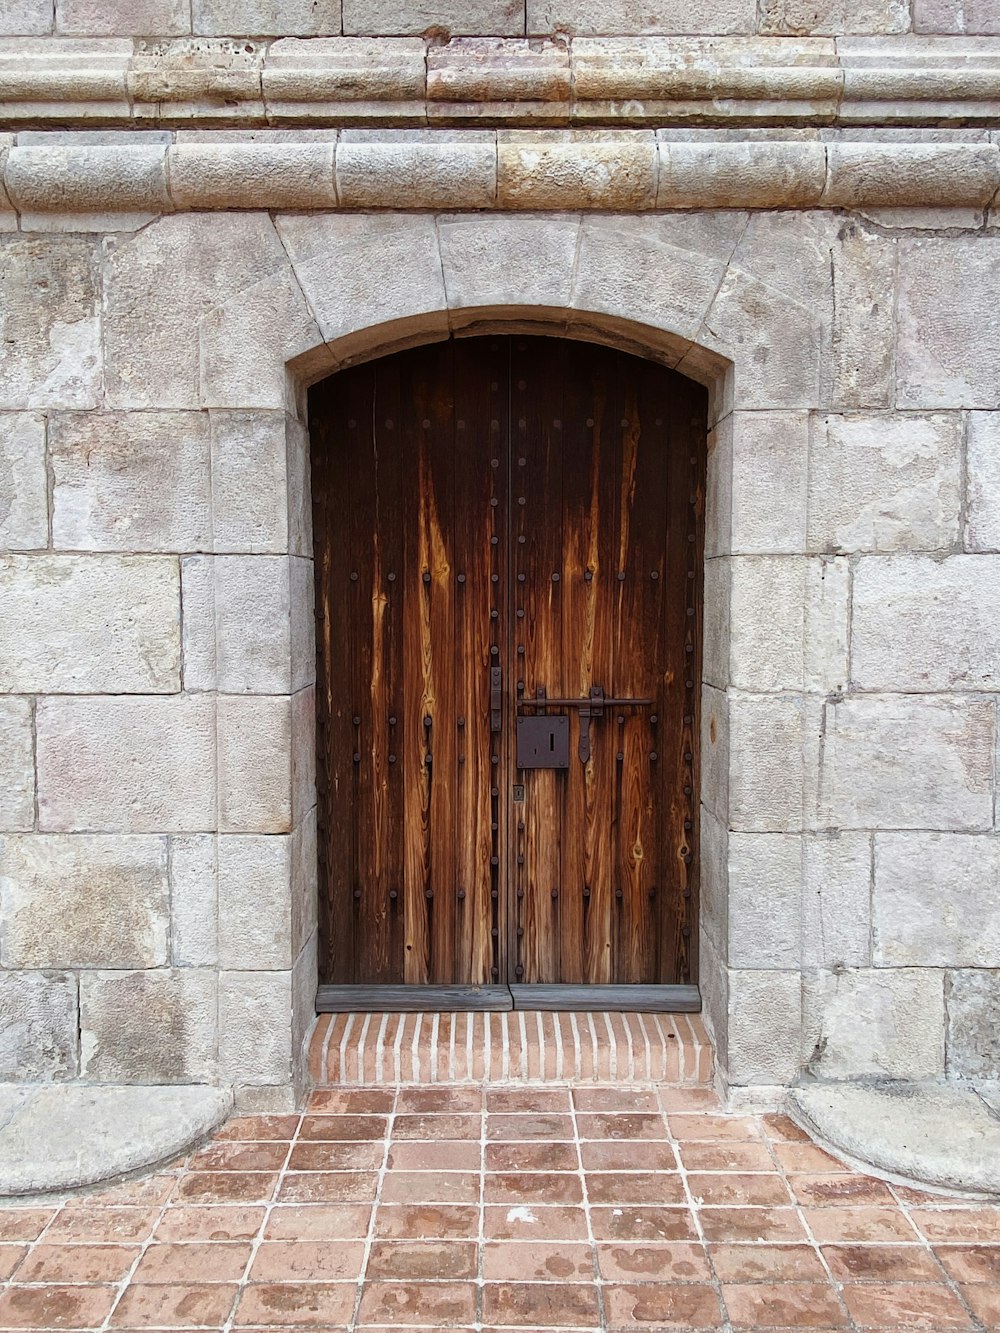 2つの木製のドアとレンガ造りの通路がある石造りの建物